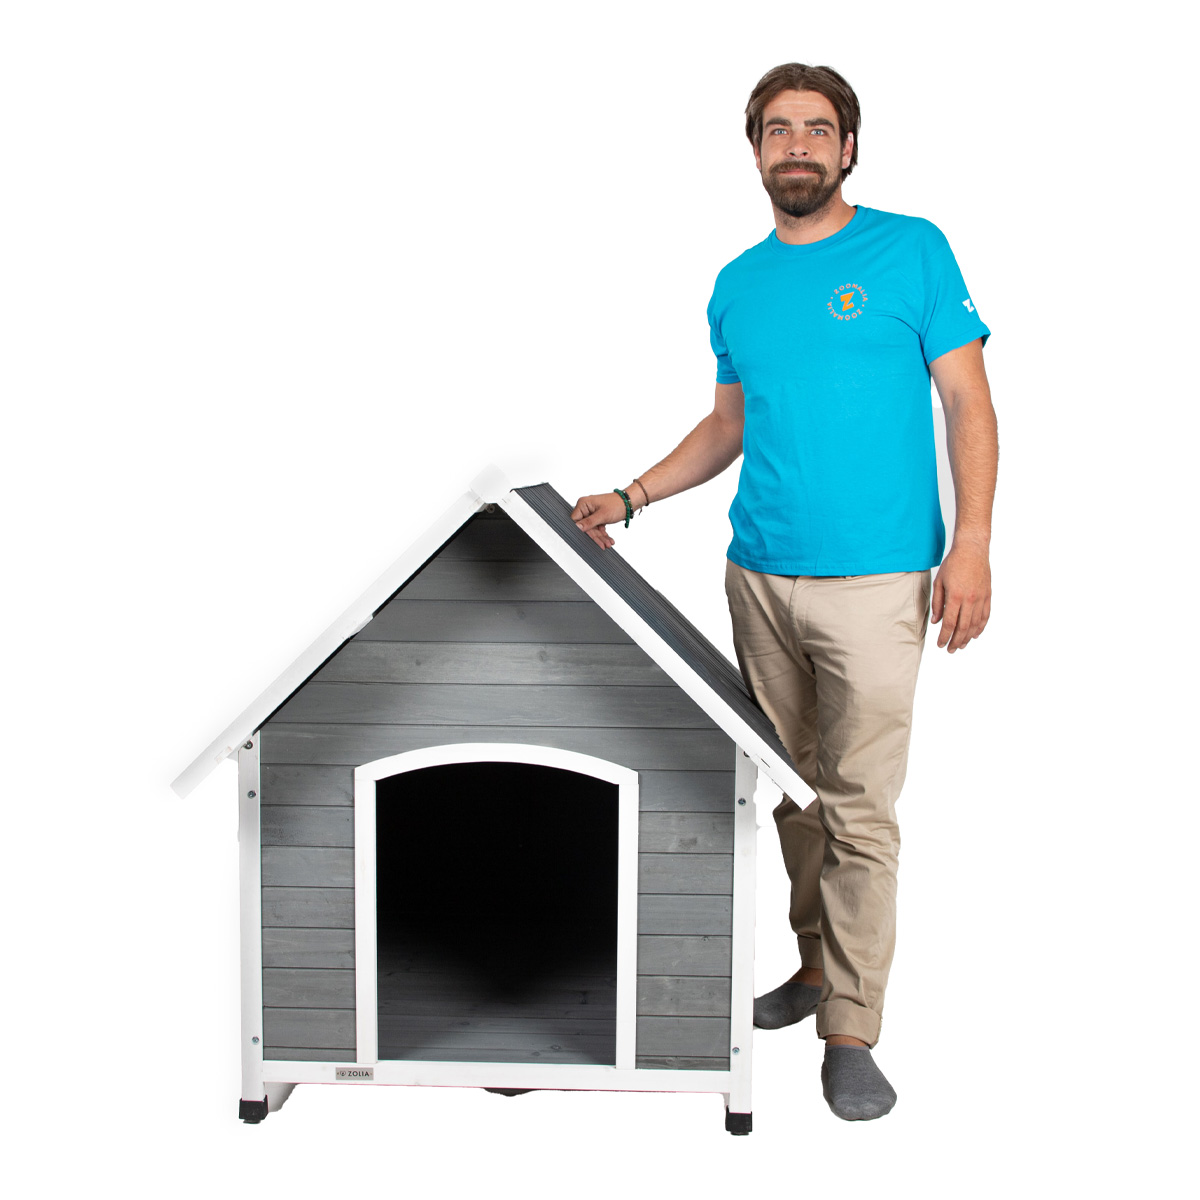 Presentado la caseta de madera para perros con techo de PVC Zolia Kiara